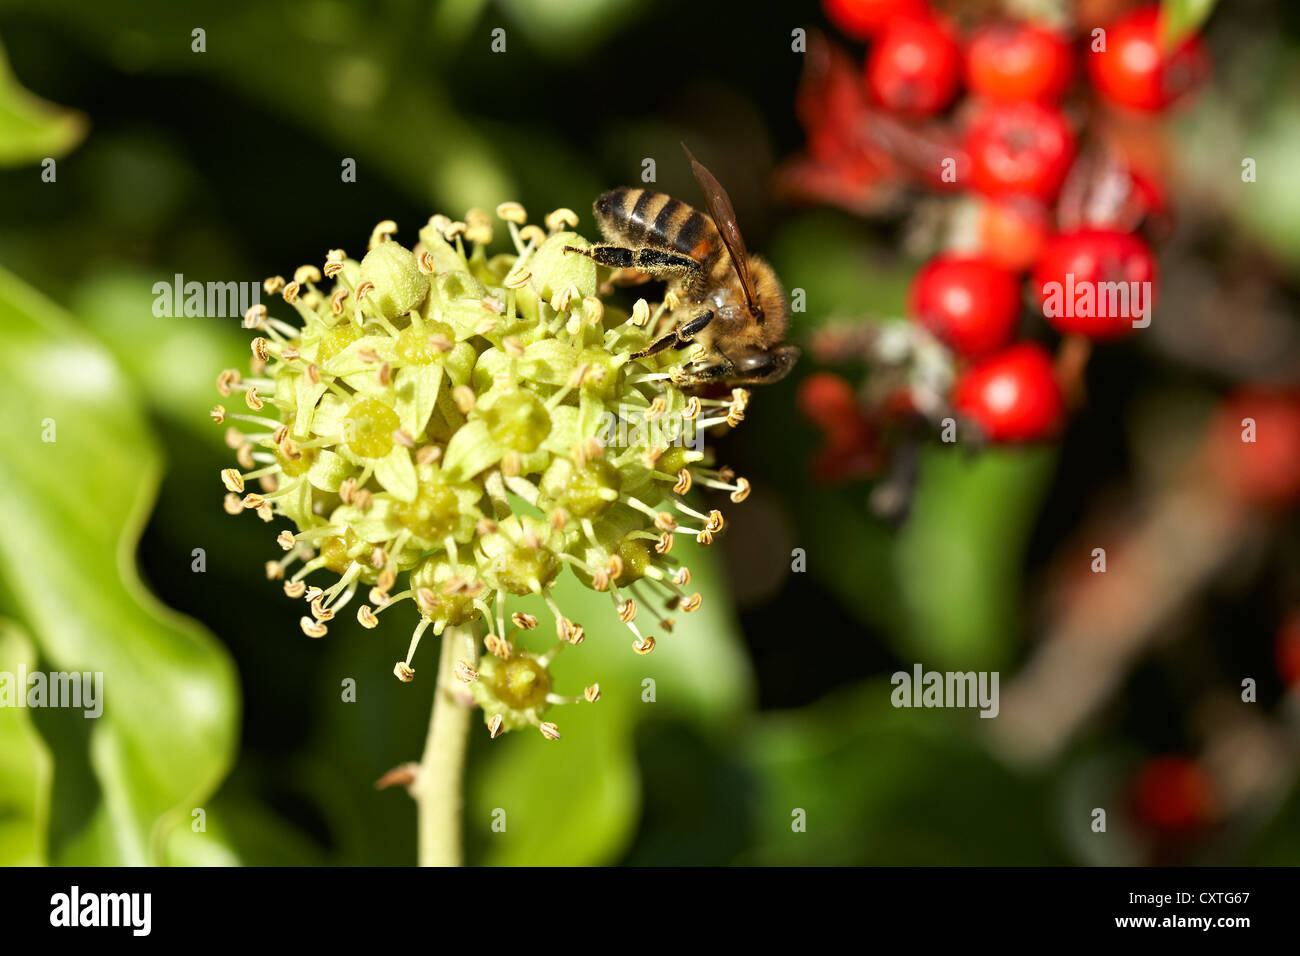 Trabajador miel de abejas Apis mellifera forrajeando para el polen y el néctar de la flor de la Hiedra Hedera helix. Los granos de polen amarillo Foto de stock